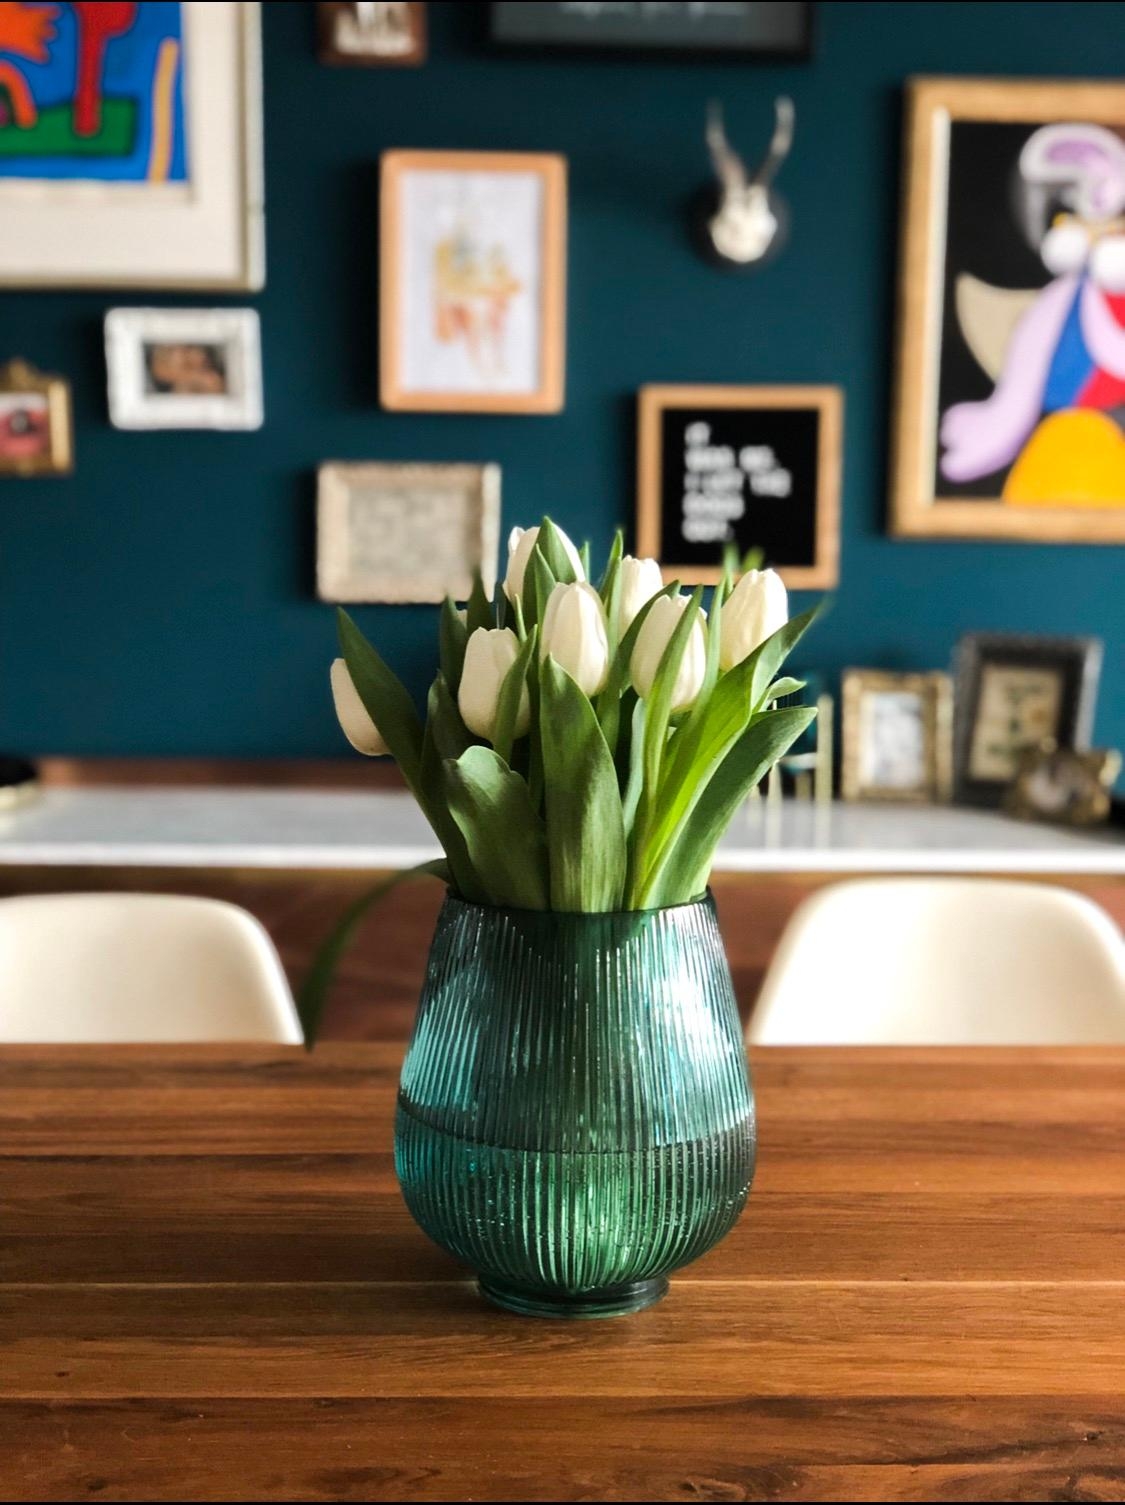 Frühlingsvibes im Esszimmer. #diningroom #tulips #freshflowers #esszimmer #couchstyle